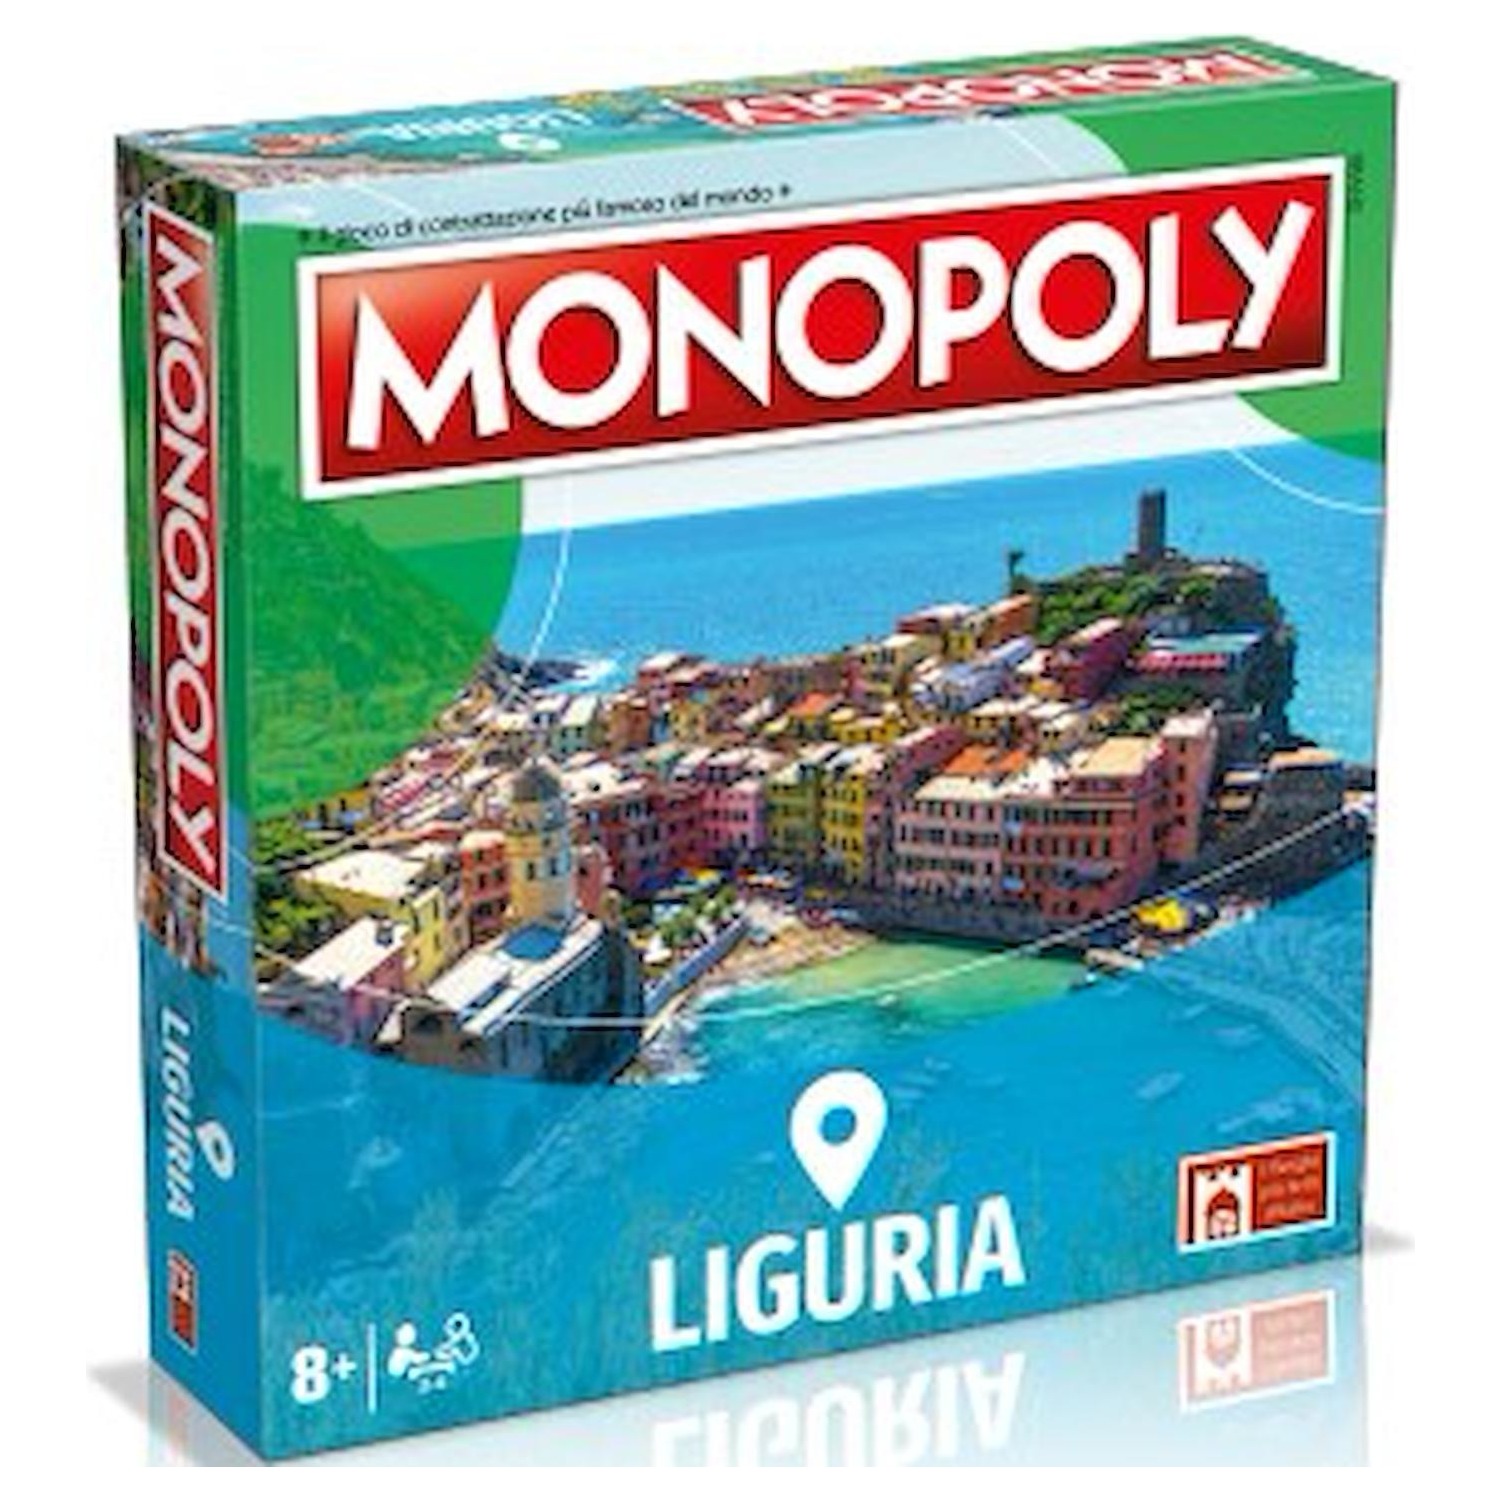 Immagine per Gioco in scatola Monopoly Liguria da DIMOStore